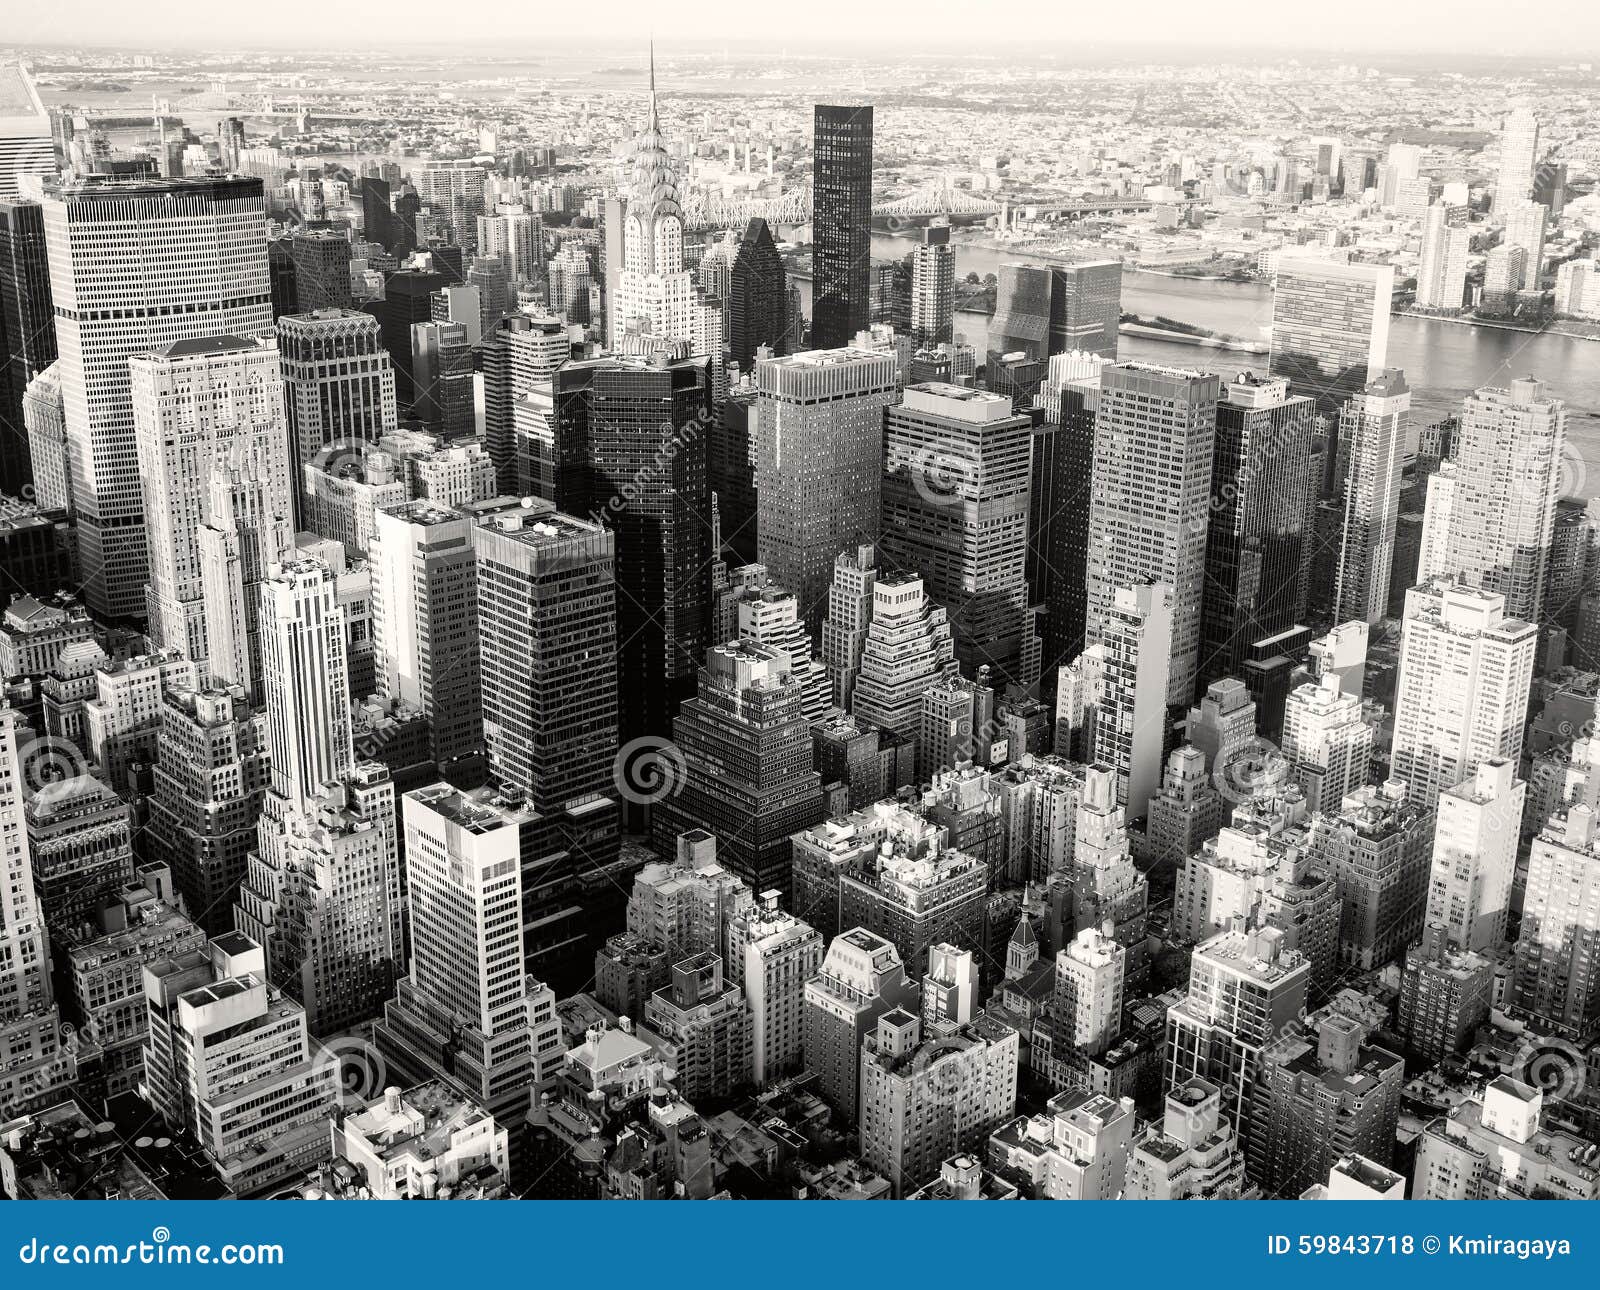 图片素材 : 黑与白, 天际线, 建造, 摩天大楼, 纽约市, 市容, 美国, 鸟瞰图, 塔楼, 都会, 单色摄影, 大都市区 ...